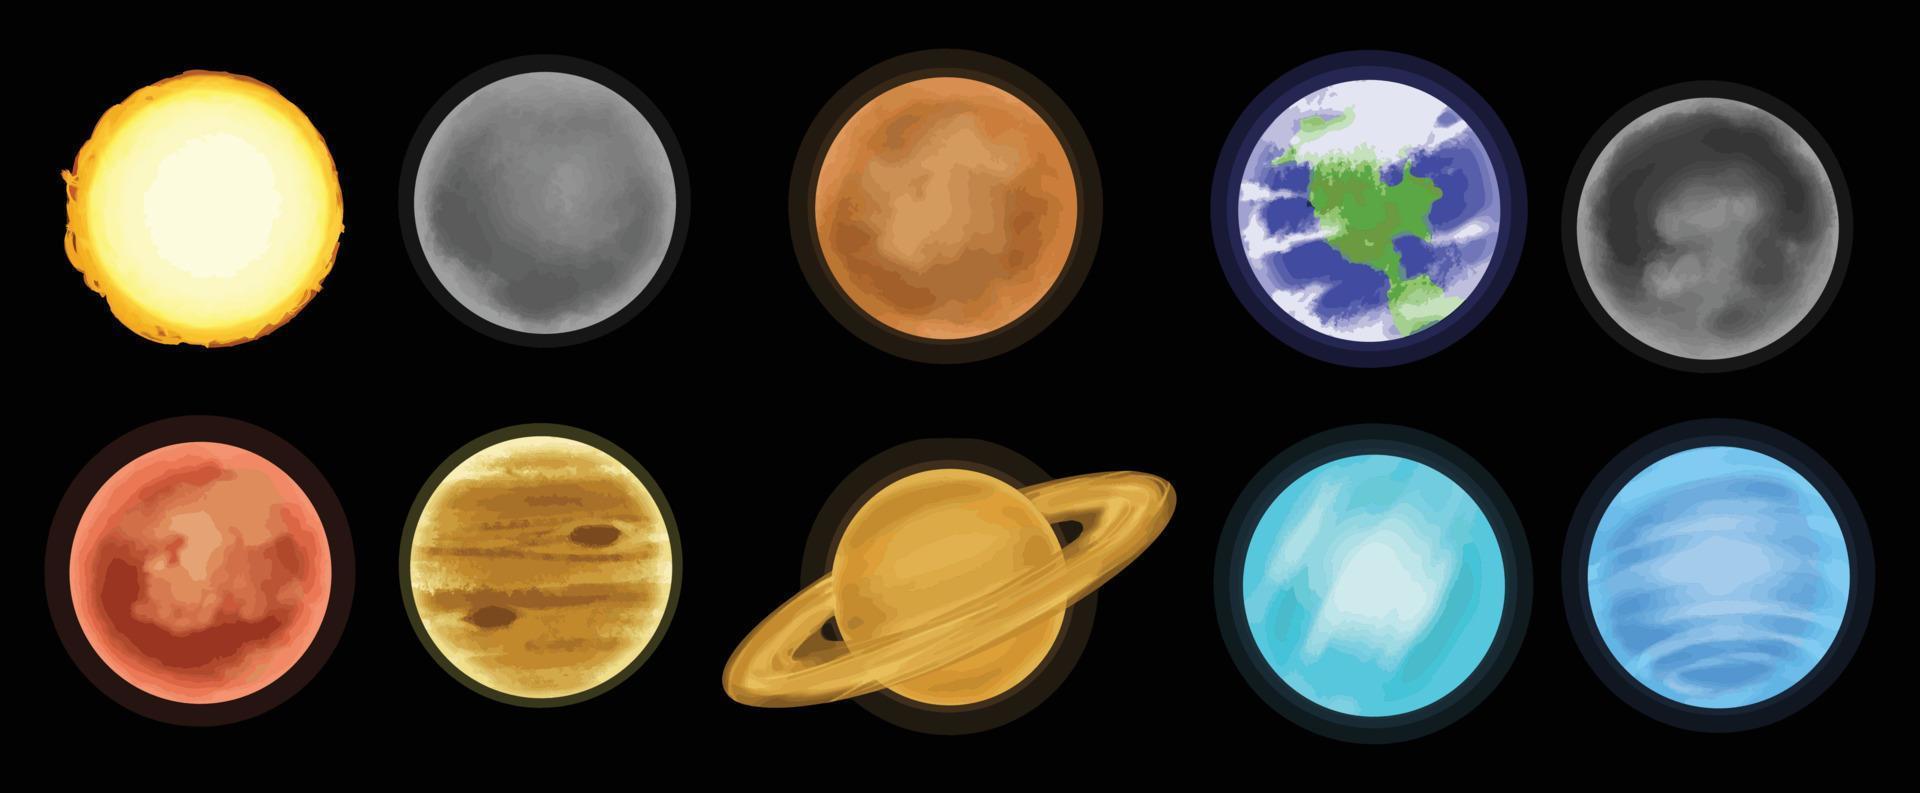 Das Sonnensystem, Astronomie, Sterne und Weltraum, 2D-Darstellung vektor